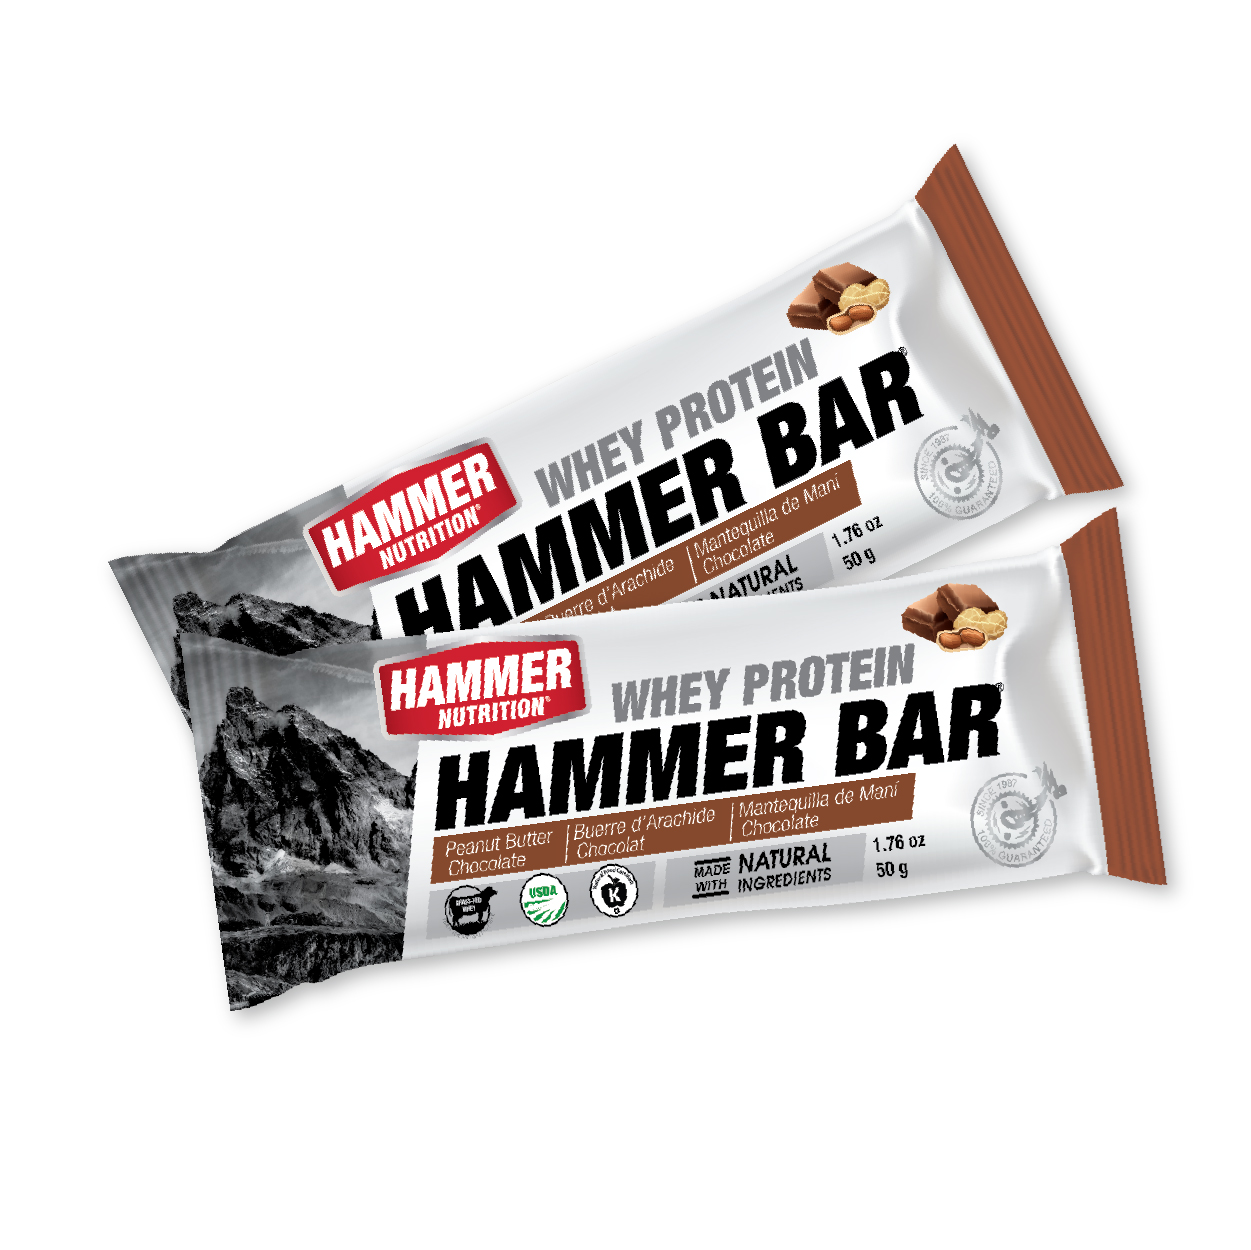 Thanh Whey Protein Hammer Bar - Cung cấp đầy đủ Protein và dinh dưỡng thay thế bữa ăn khi luyện tập, thi đấu (Thanh 50g)